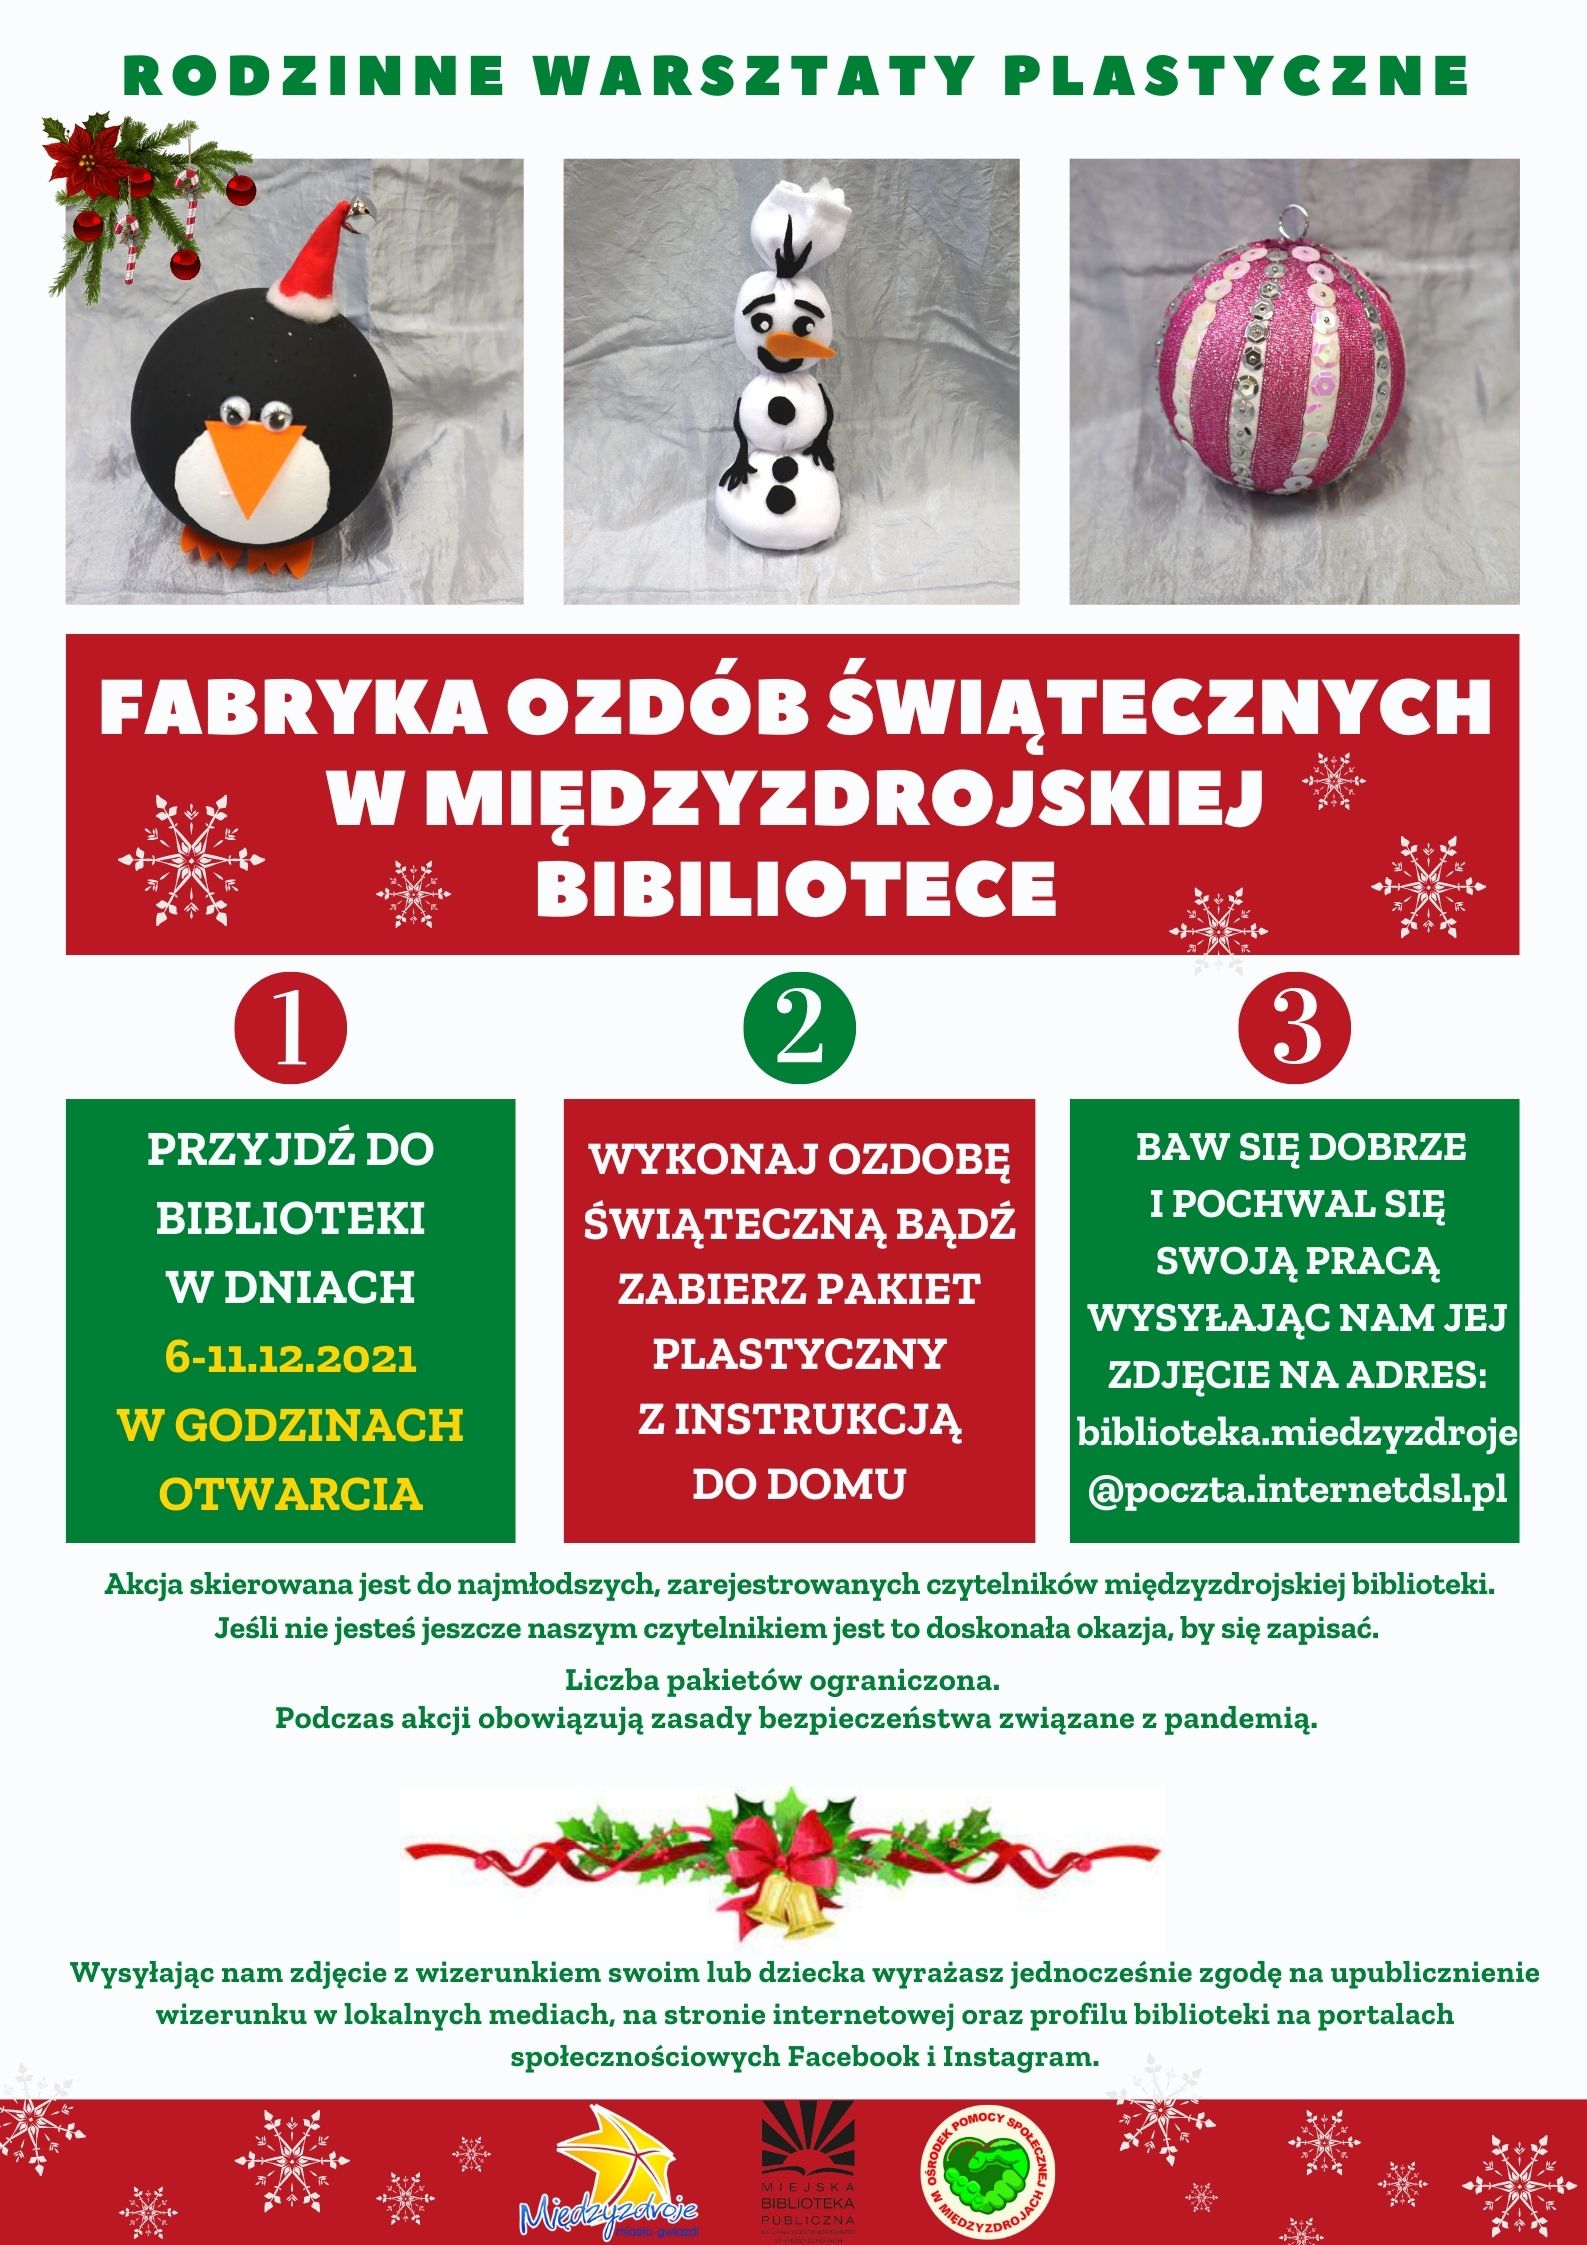 Rodzinne warsztaty plastyczne “Fabryka ozdób świątecznych”  06-11.12.2021 r.